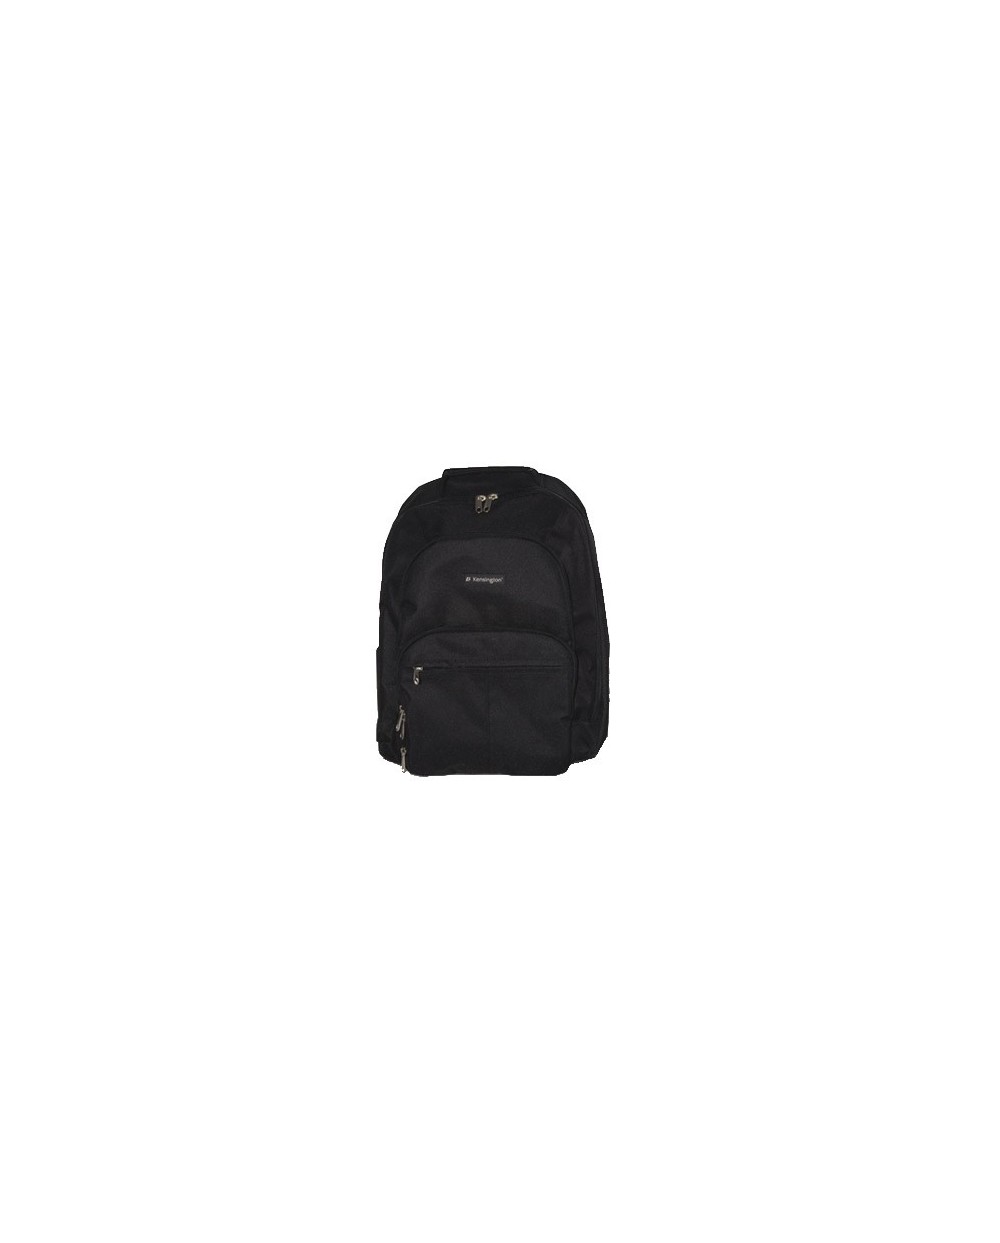 Mochila para portatil kensington sp25 classic backpack 156 negro 480x330x180 mm